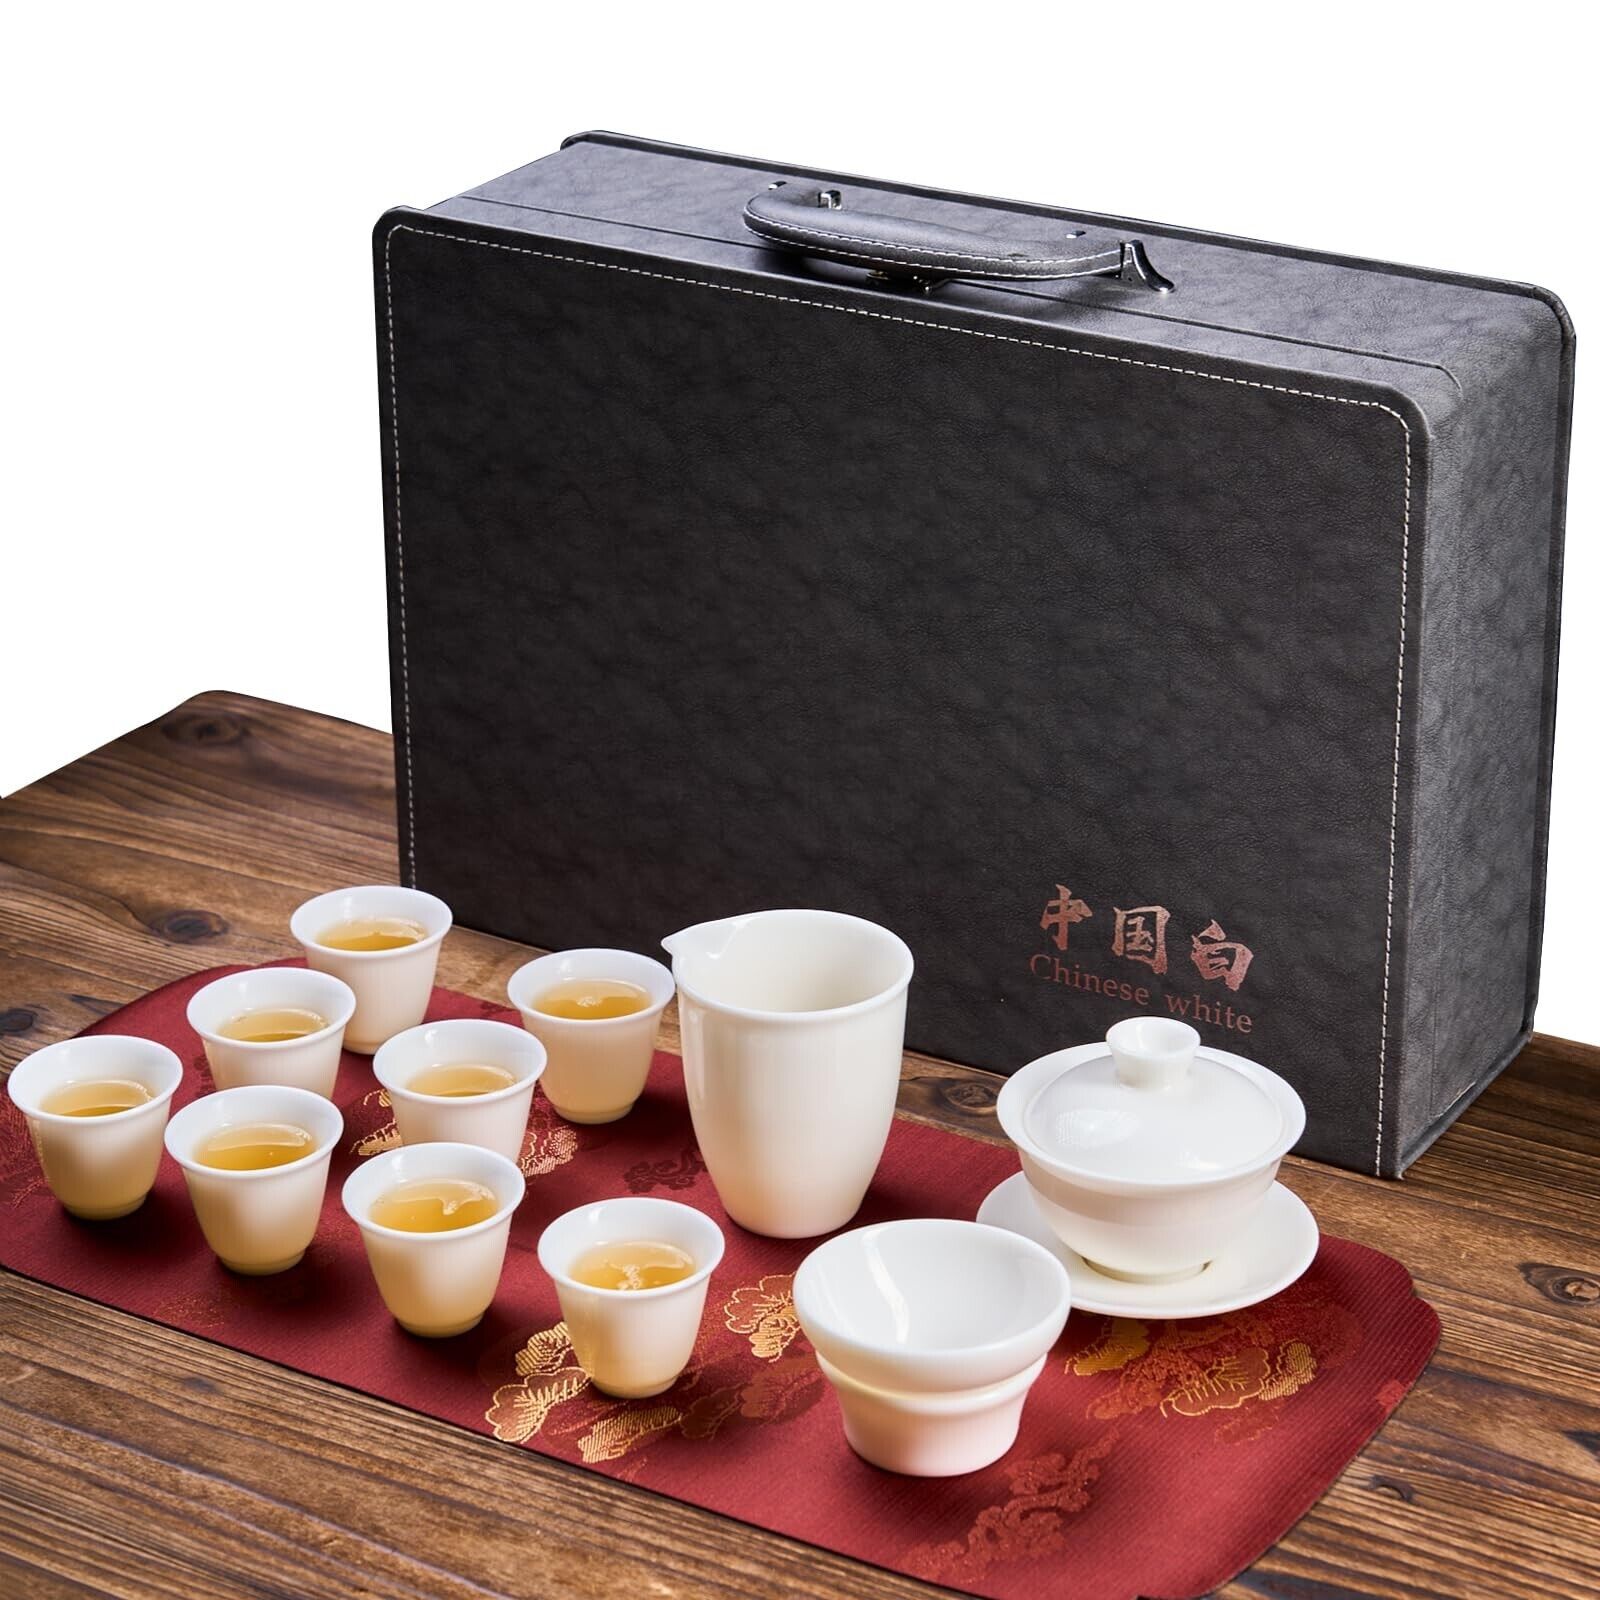 Japanese Tea Set, Chinese Tea Set, Gongfu Tea Set, Asian Tea Sets for Adults,...